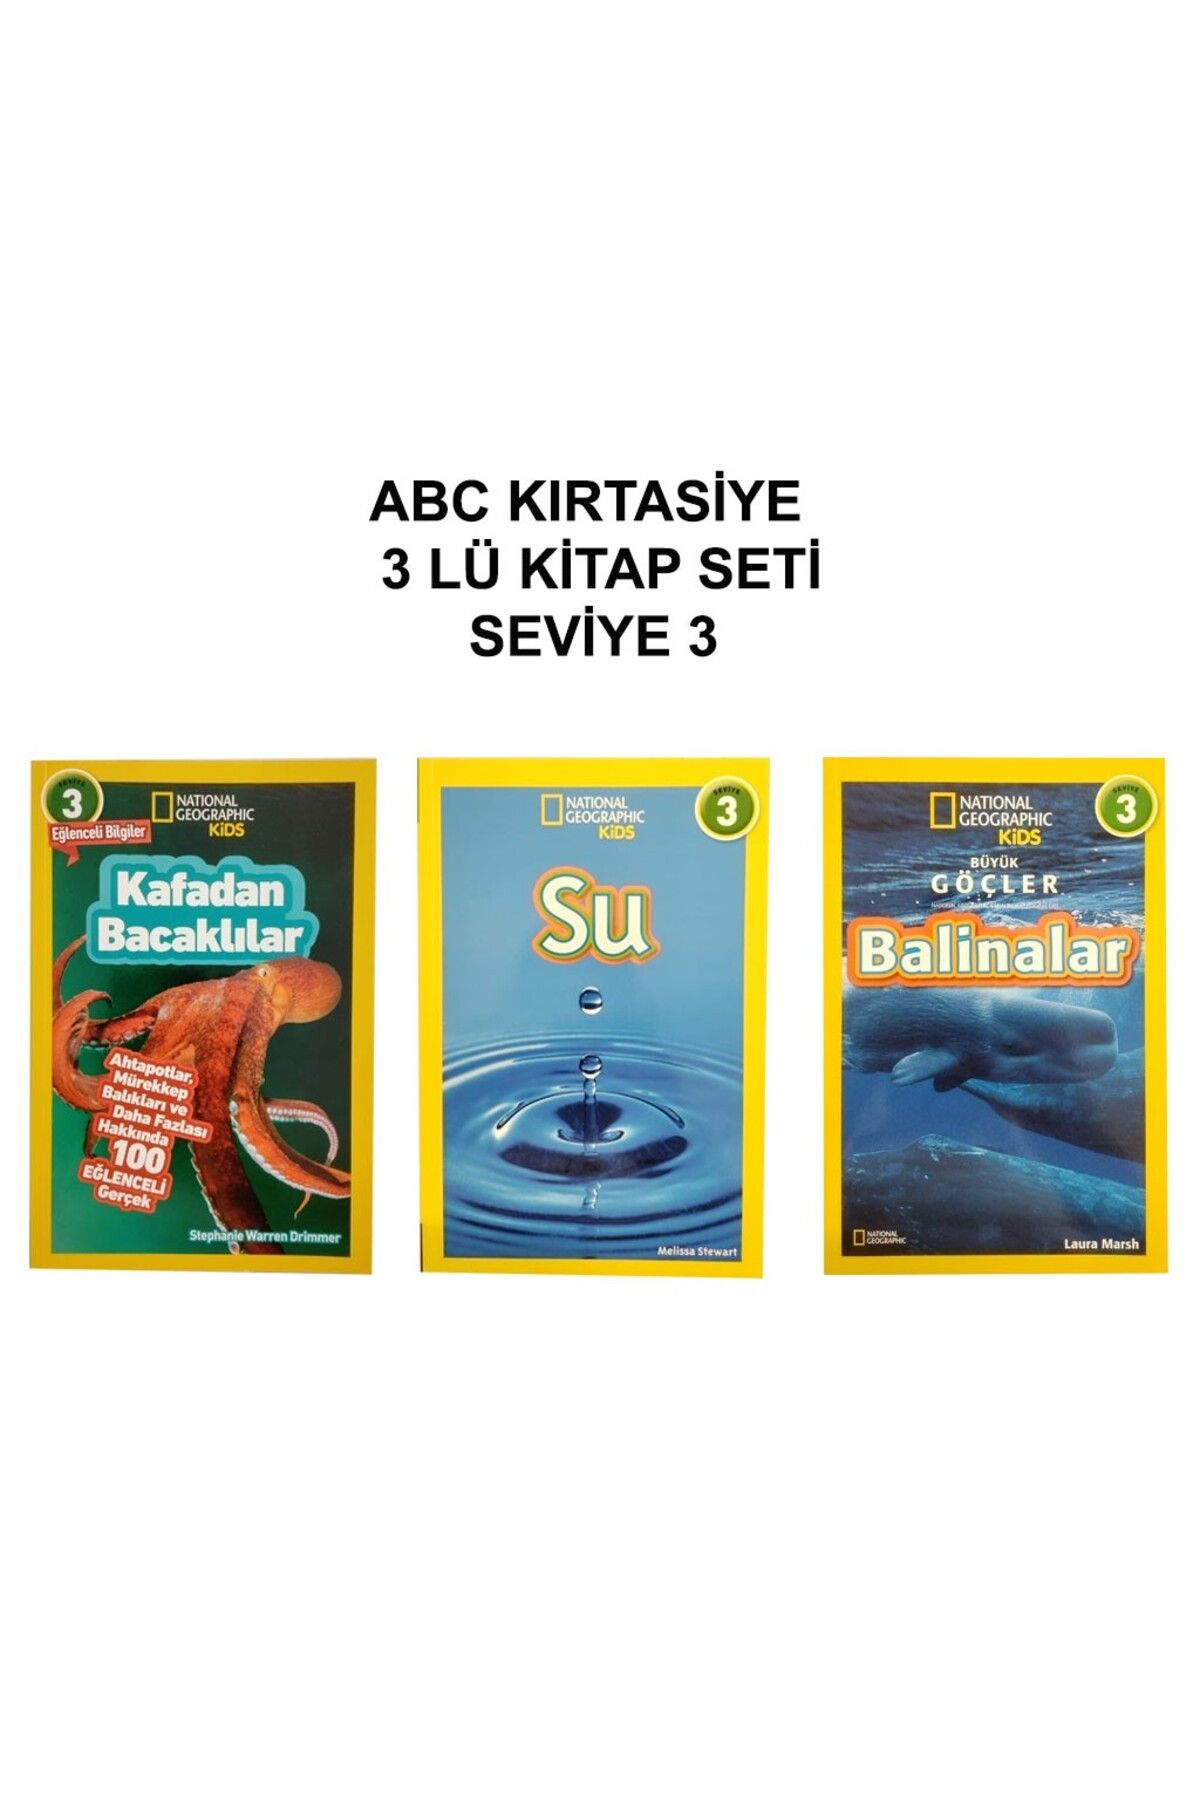 ABC Kırtasiye 3 lü Kitap Seti Seviye 3